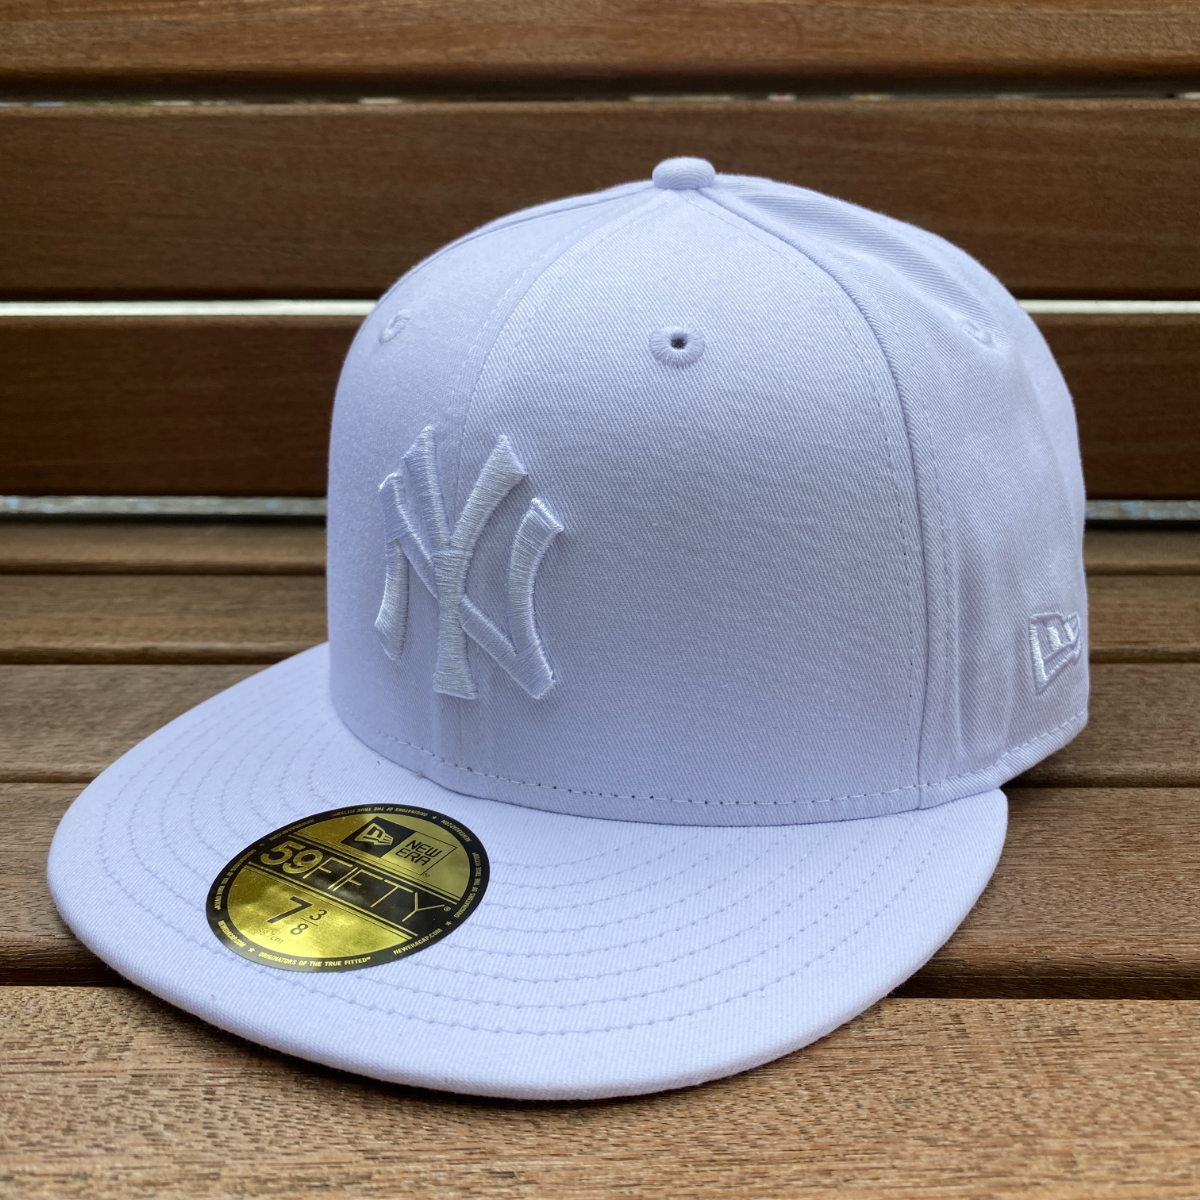 USA正規品 【7.3/8】 NEWERA ニューエラ MLB ニューヨーク ヤンキース NY Yankees 単色 ソリッドホワイト 白 59FIFTY メジャーリーグ